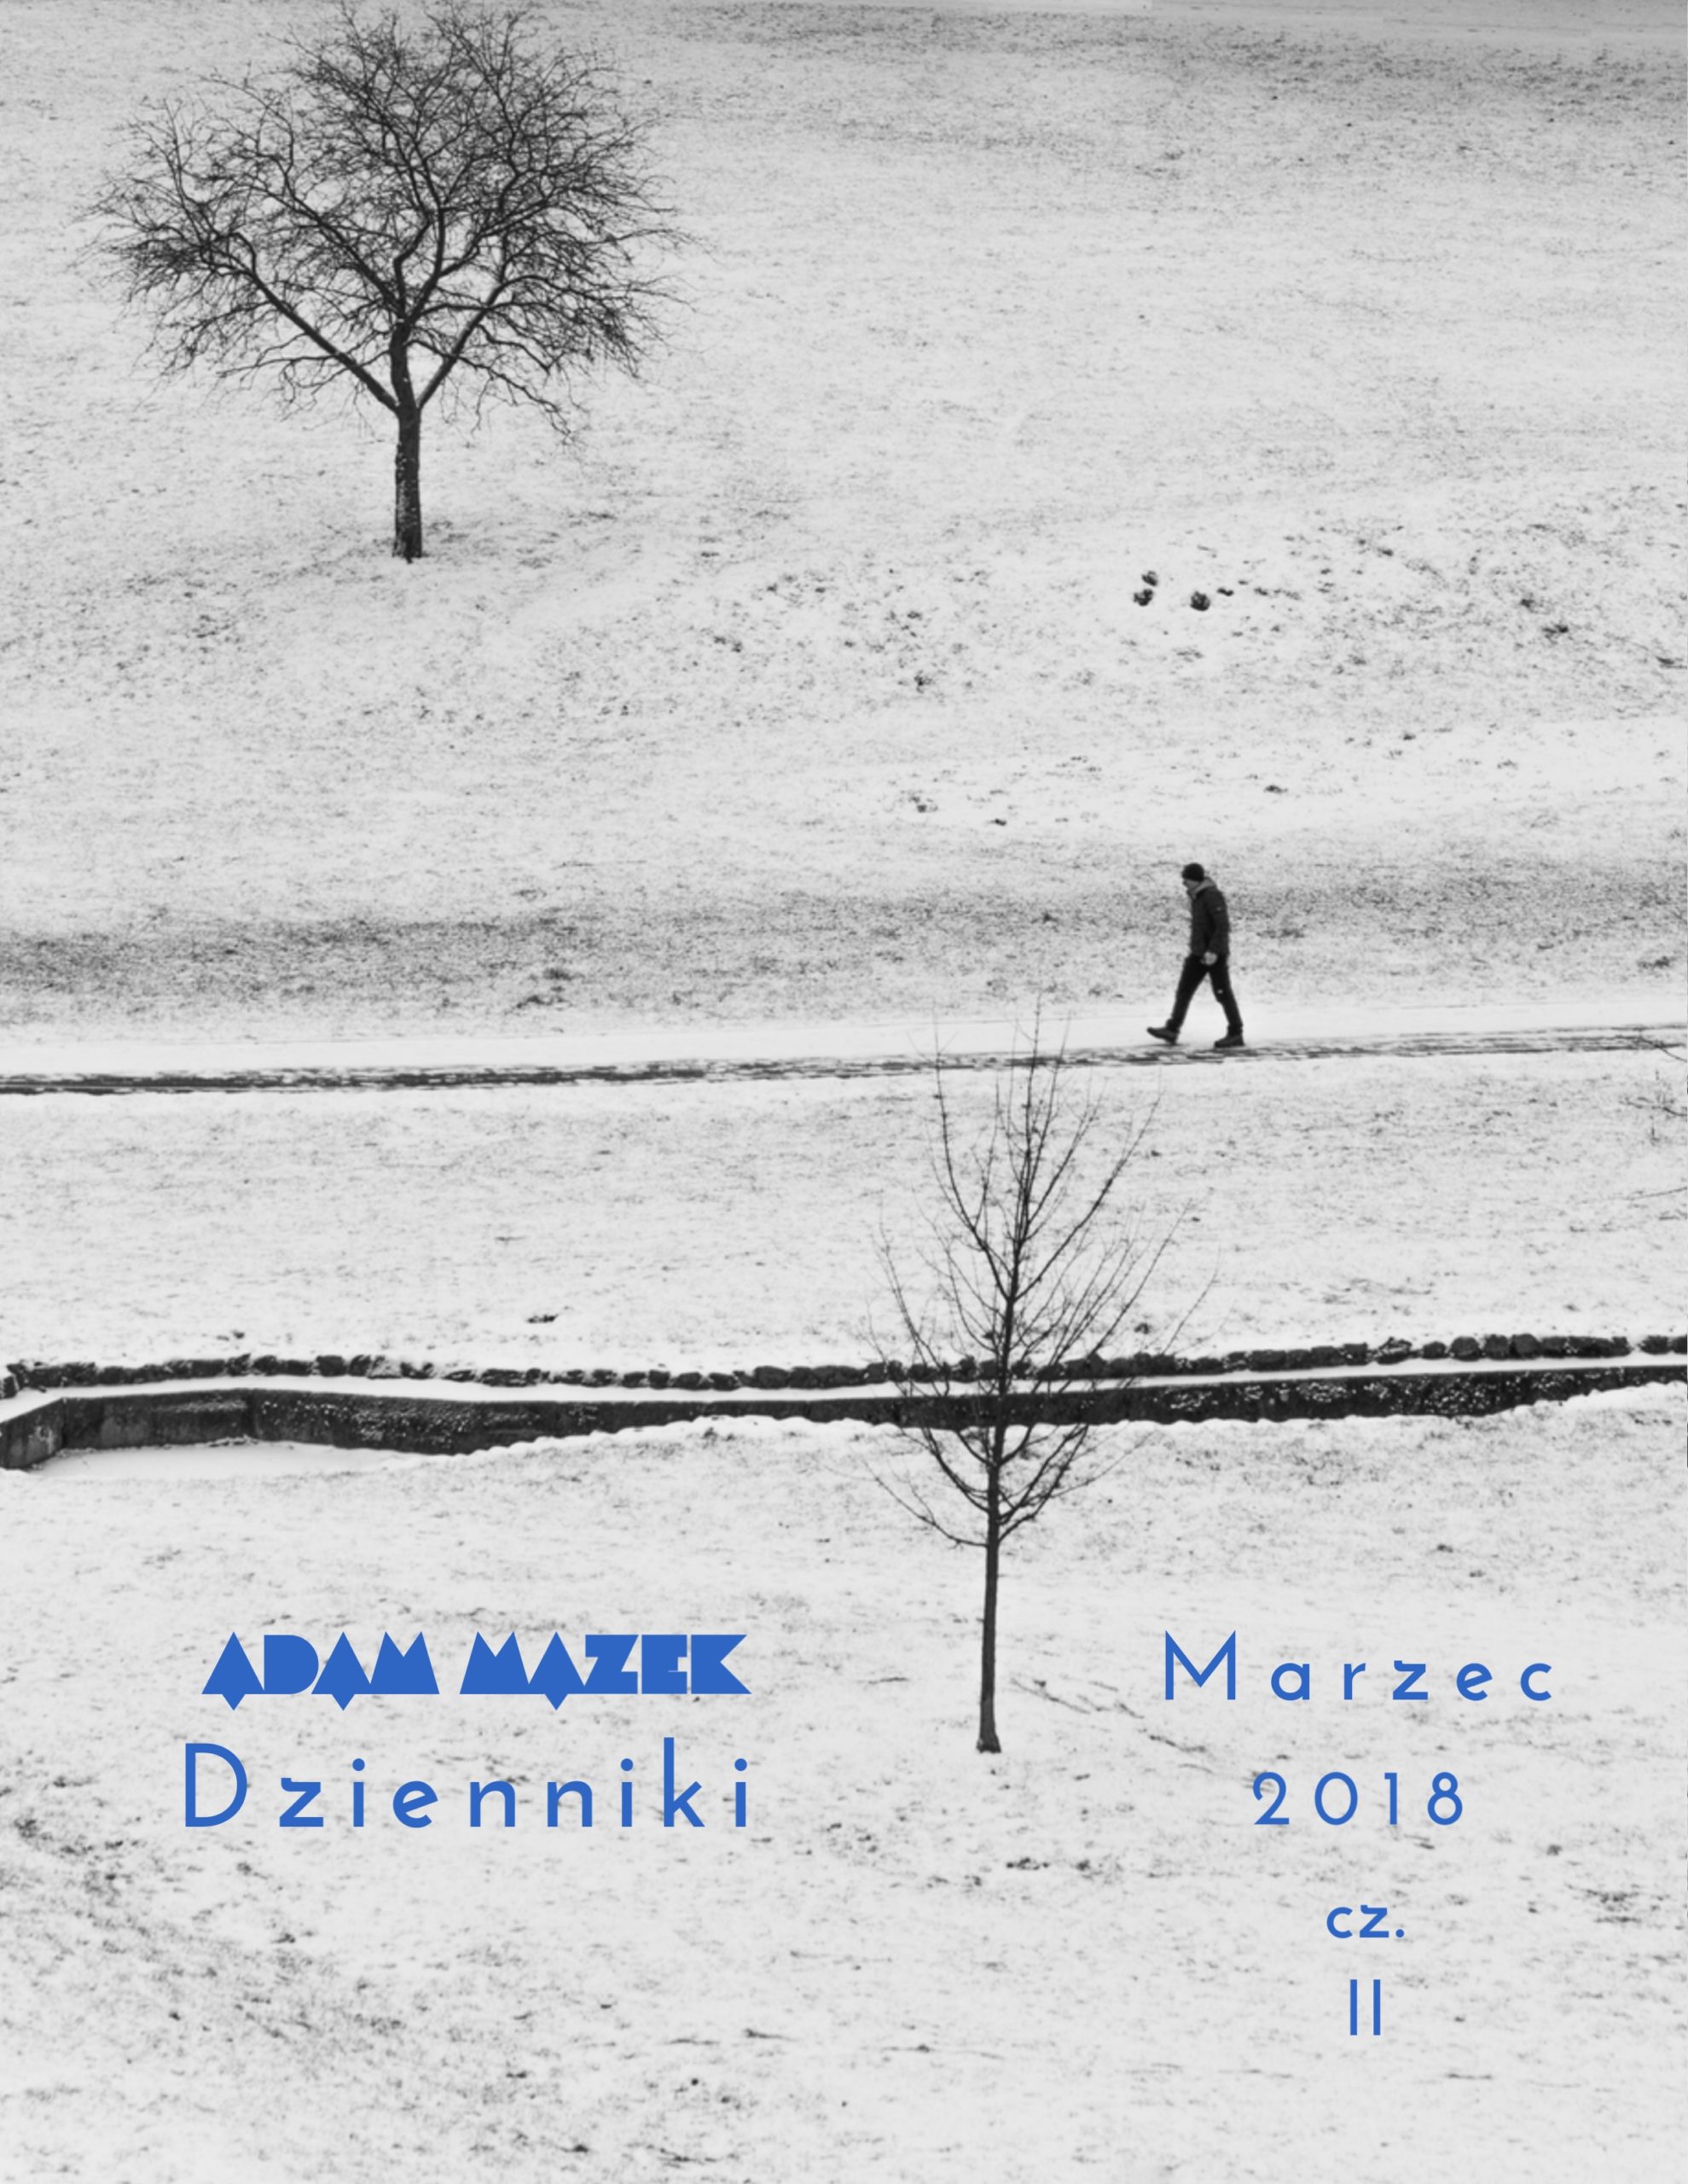 Adam Mazek Photography 2020. Post: "Dzienniki 03.2018 cz.II" Mini e-book. Cover of the Polish edition. Okładka polskiej edycji. Featured image.